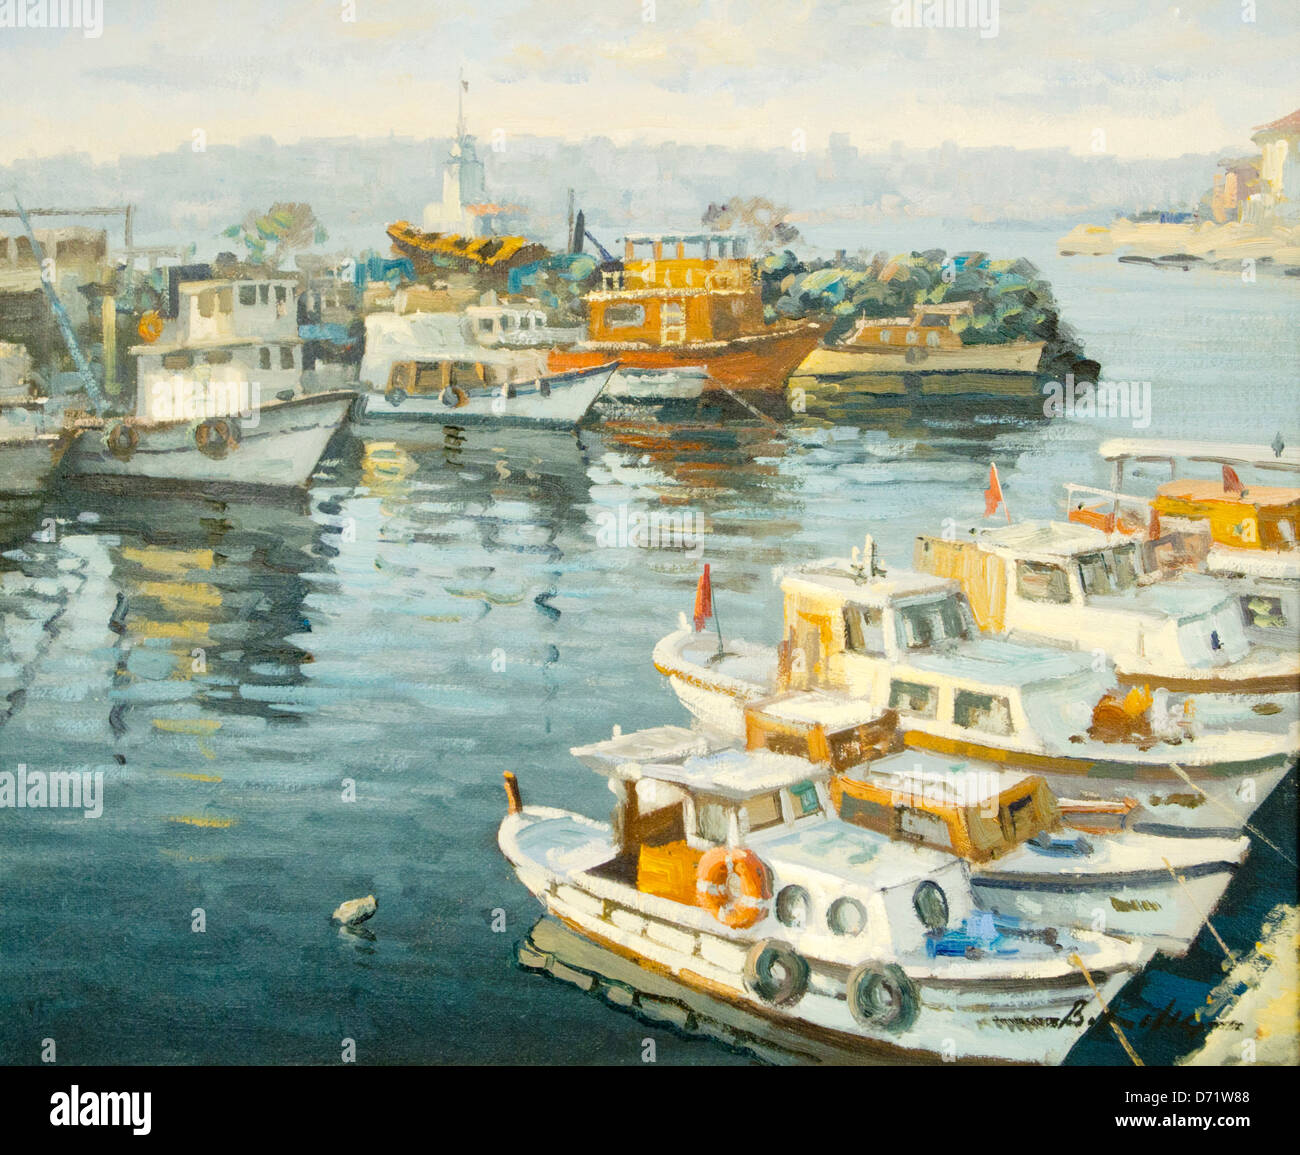 Türkei, Istanbul, Eyüp, Galeri Pierreloti, der Maler Bülent Kilic malt Ölbilder mit Istanbulmotiven. Foto Stock